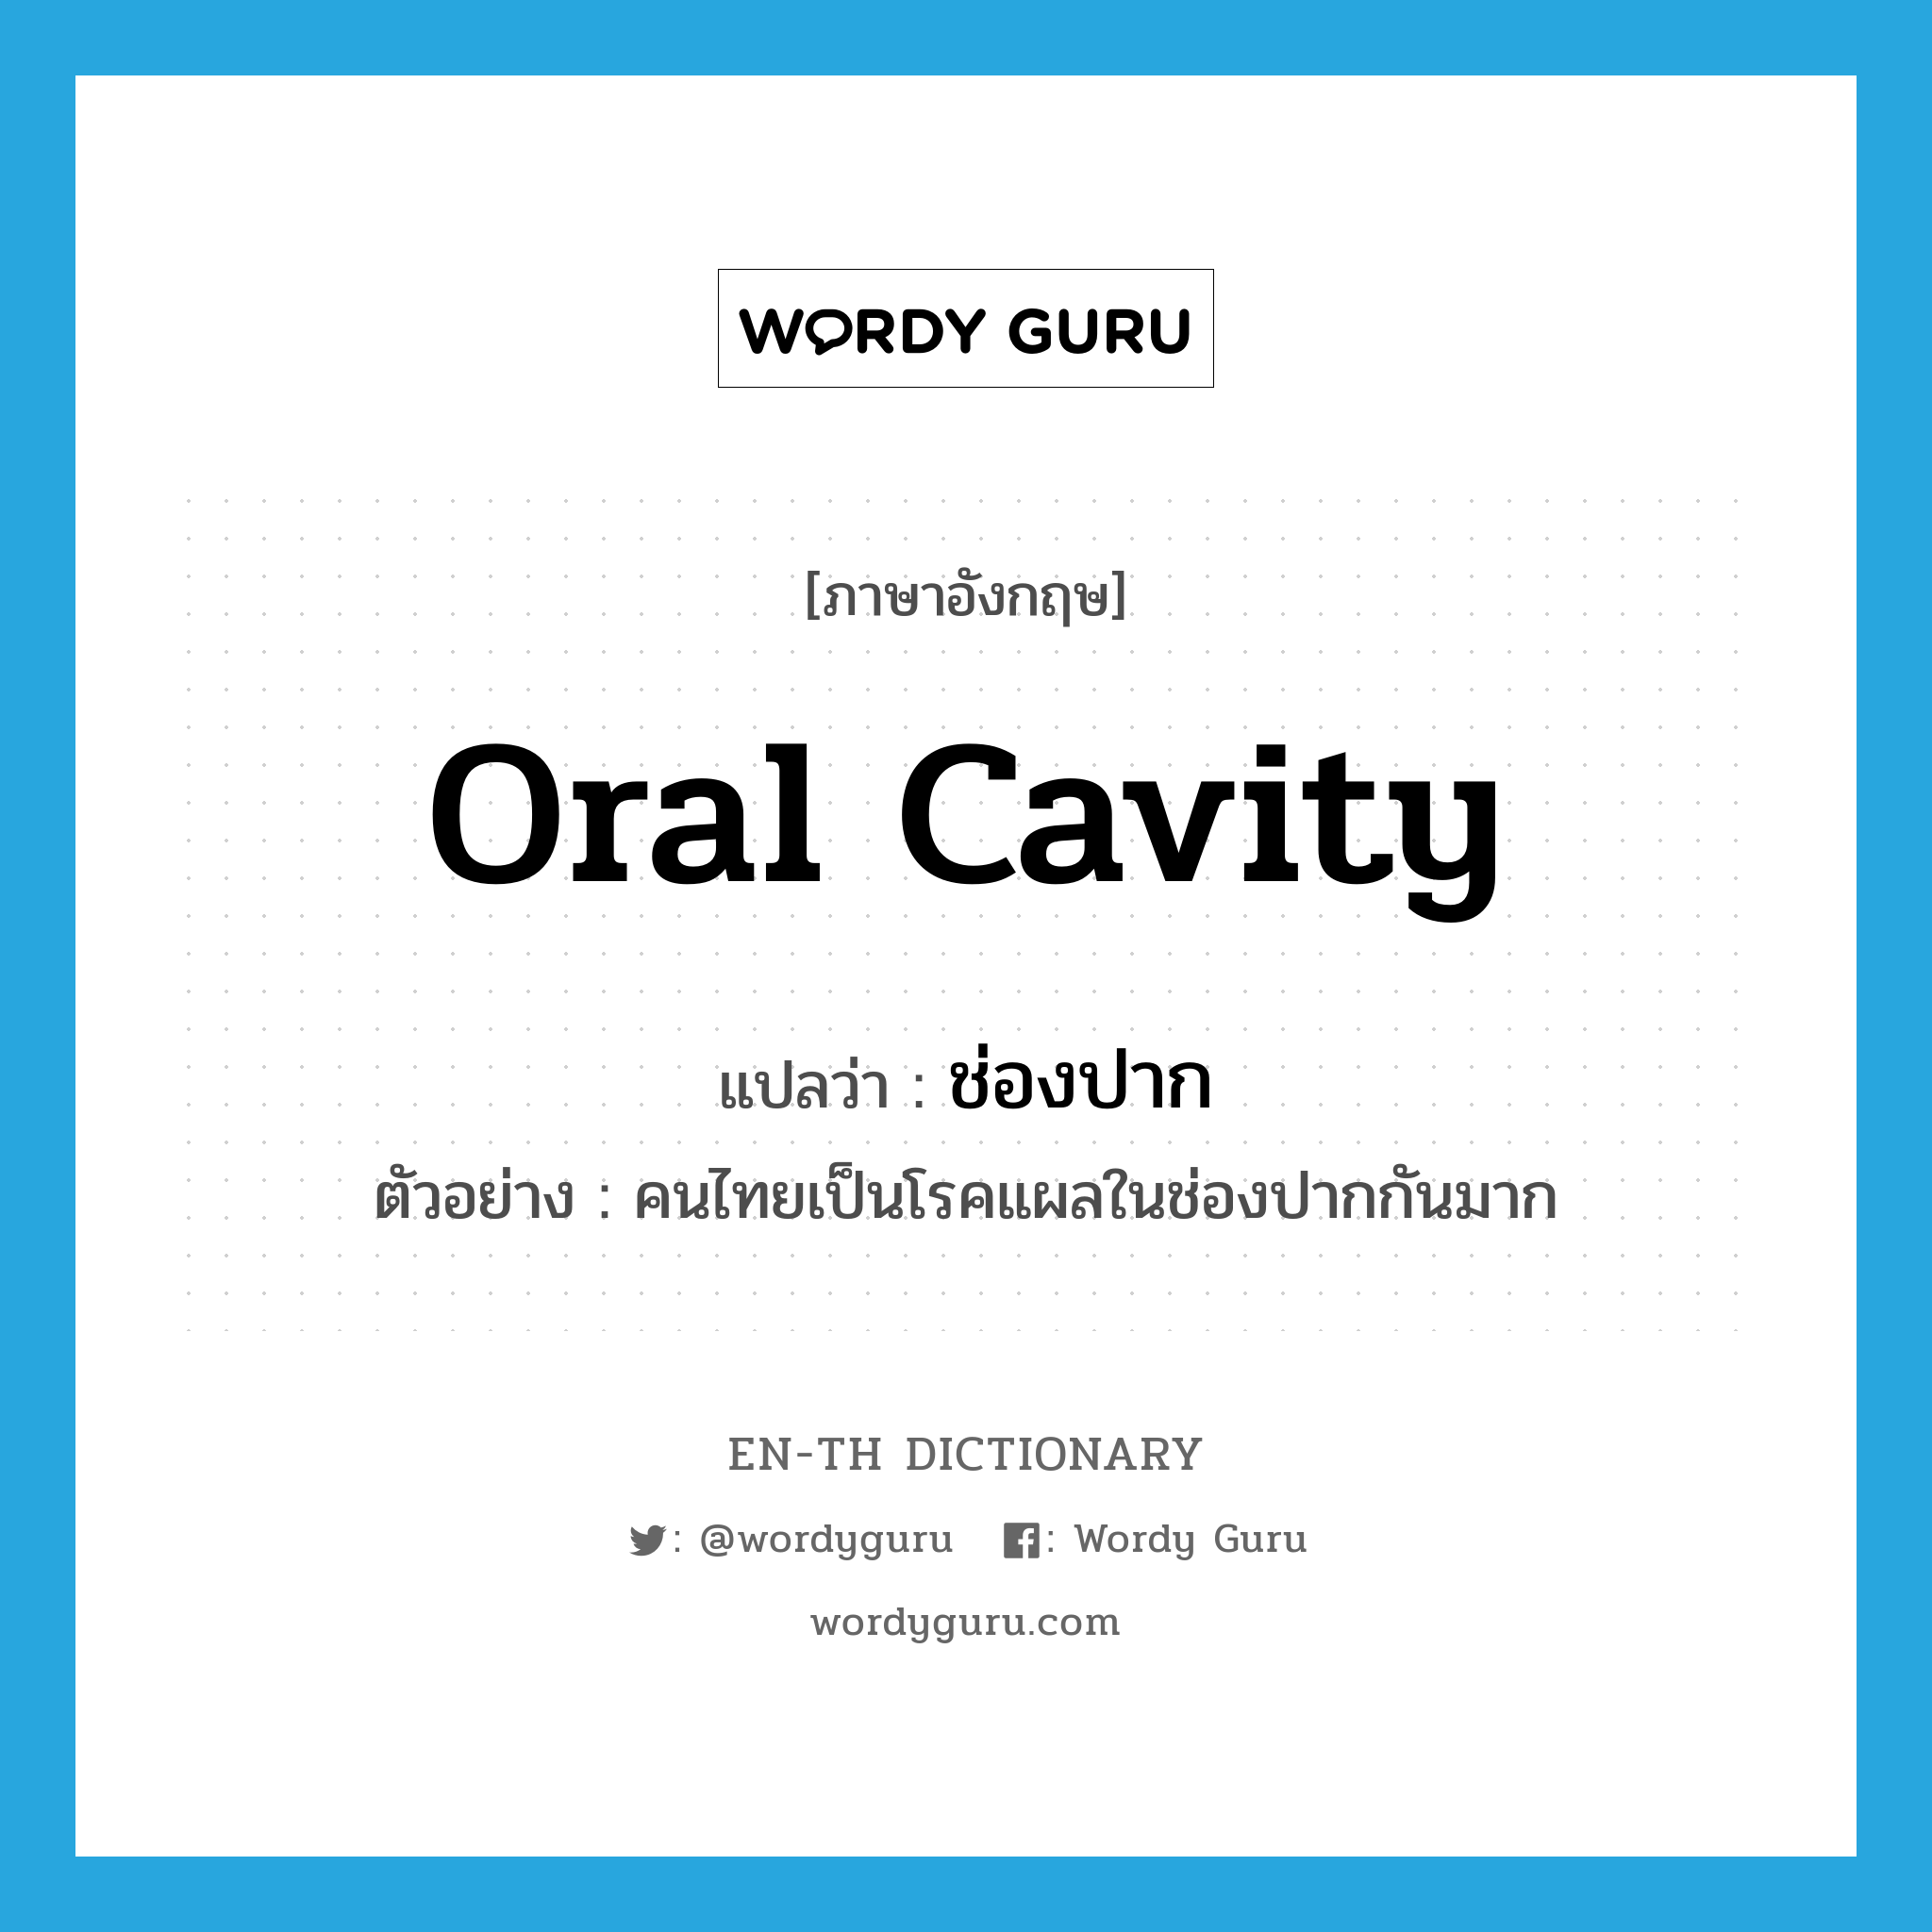 oral cavity แปลว่า?, คำศัพท์ภาษาอังกฤษ oral cavity แปลว่า ช่องปาก ประเภท N ตัวอย่าง คนไทยเป็นโรคแผลในช่องปากกันมาก หมวด N